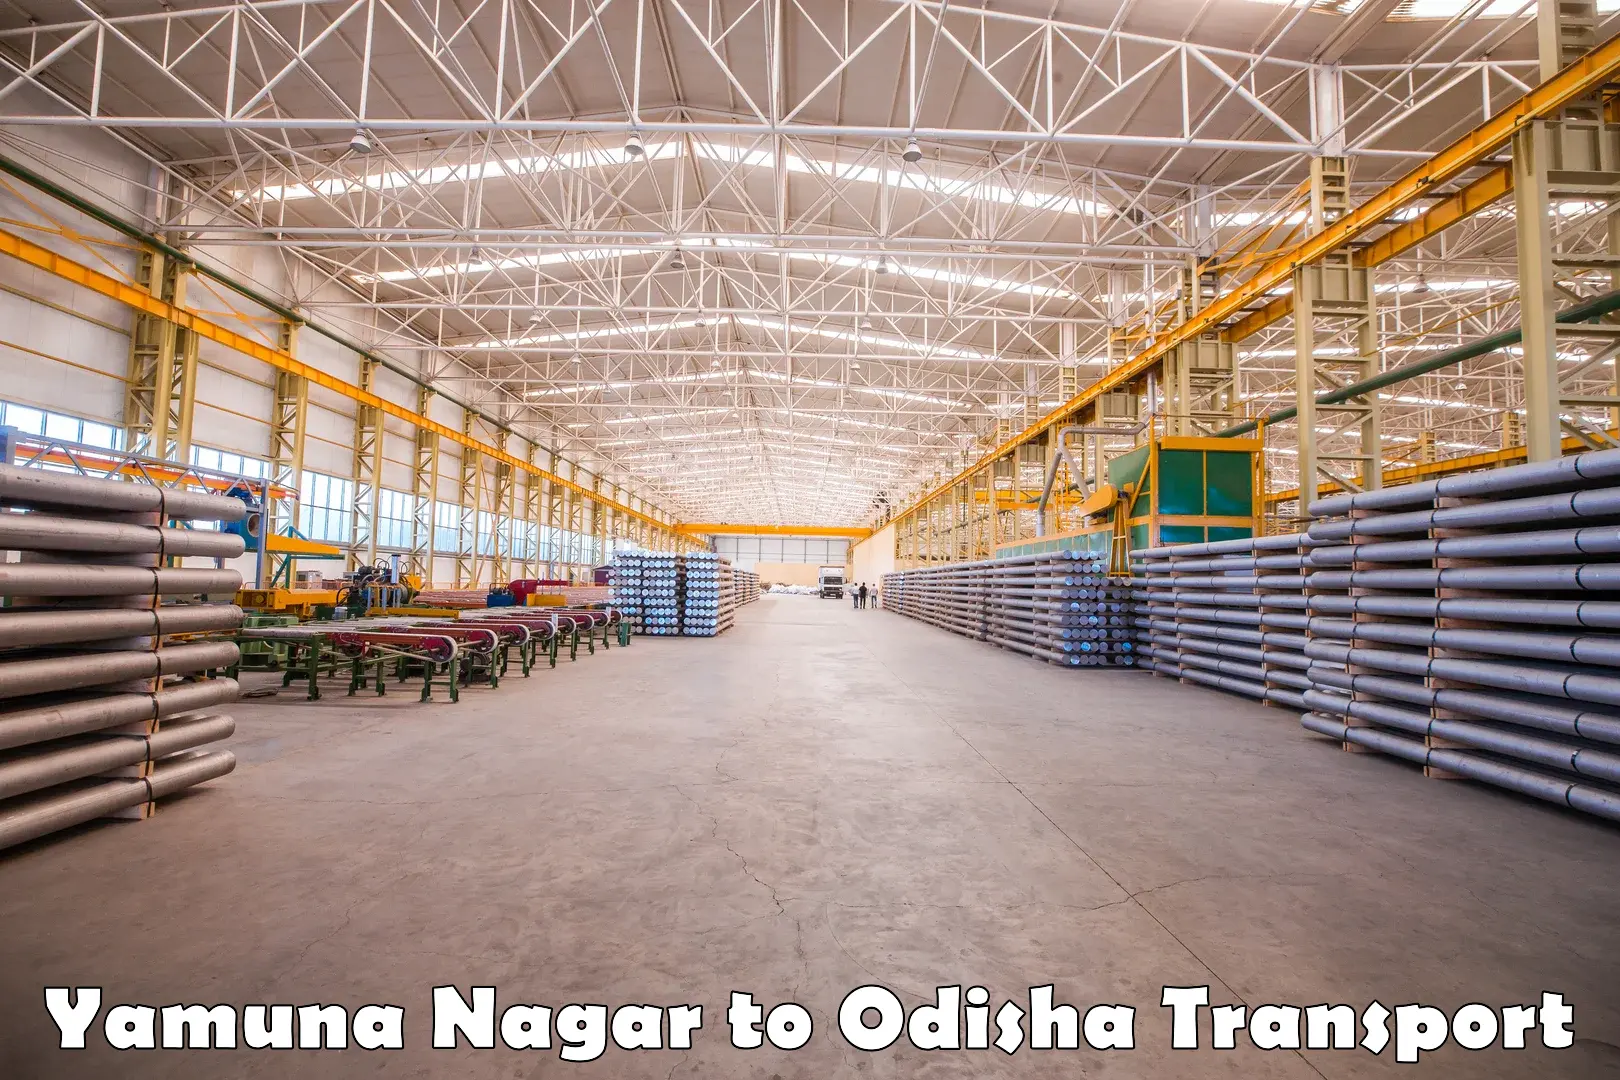 Shipping partner Yamuna Nagar to Badagada